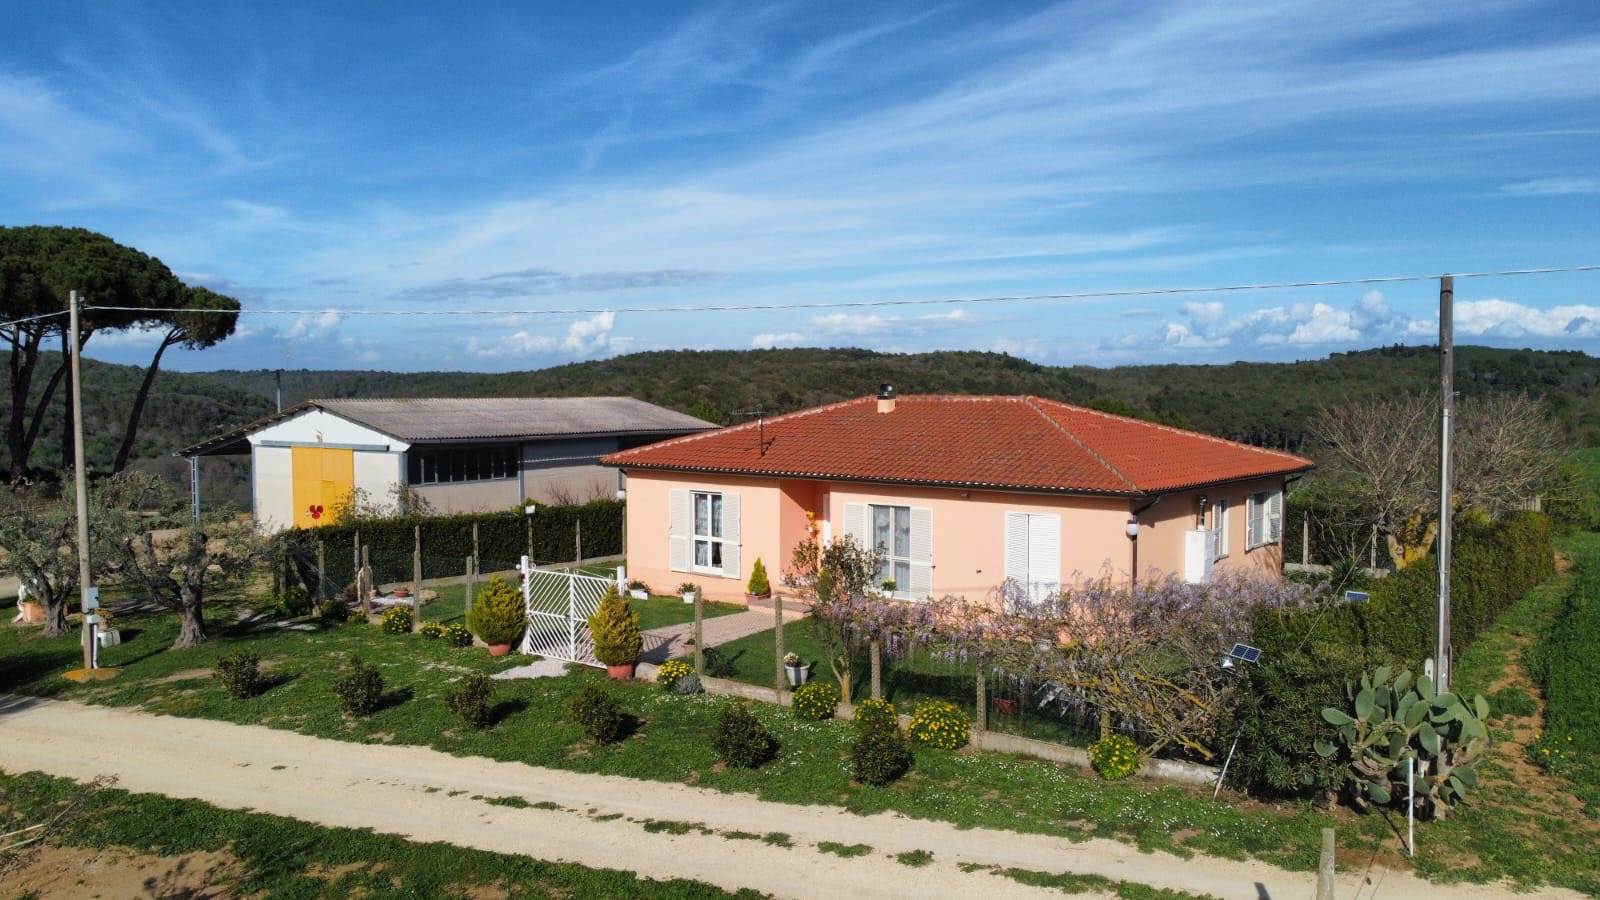 Villa in vendita a Tarquinia, 6 locali, prezzo € 320.000 | PortaleAgenzieImmobiliari.it